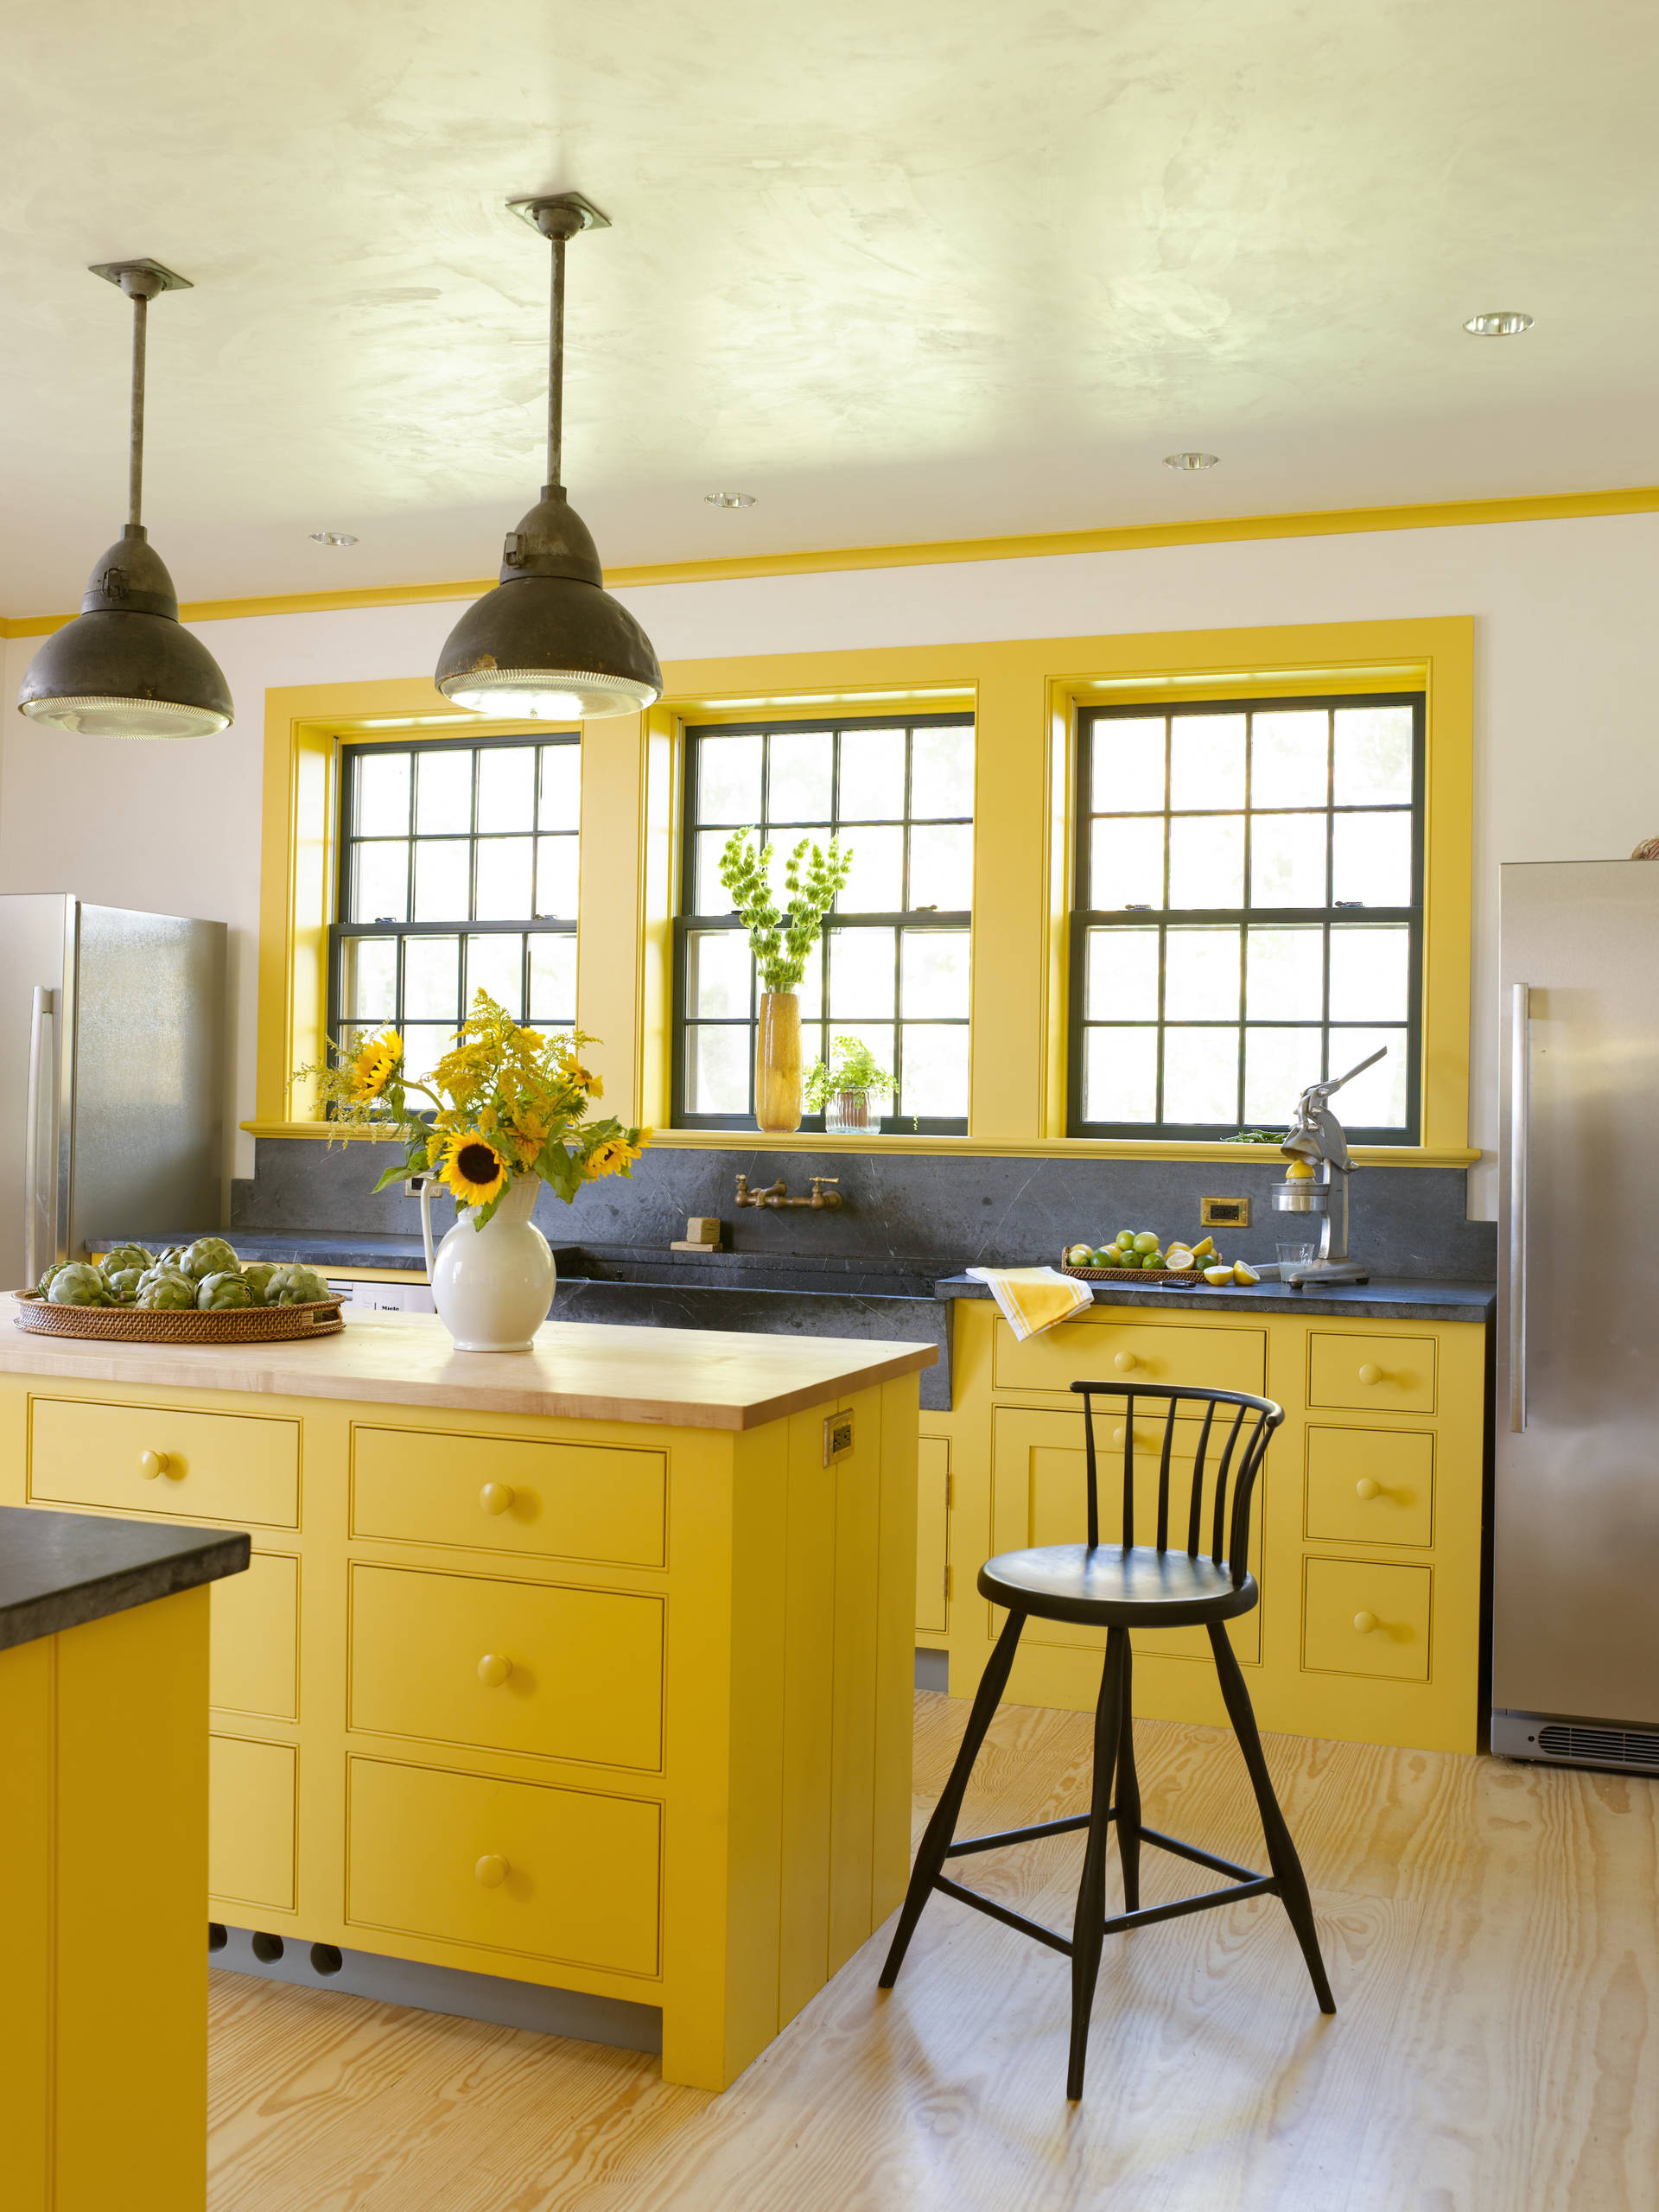 Phòng bếp xinh đẹp như một bức tranh khiến ai cũng tràn đầy năng lượng tích cực khi bước vào. Từ màu sơn của tủ, đảo bếp, khung cửa sổ cho đến hoa hướng dương rực rỡ. Lúc này, màu xám đậm lại trở thành điểm nhấn để màu vàng tỏa sáng!